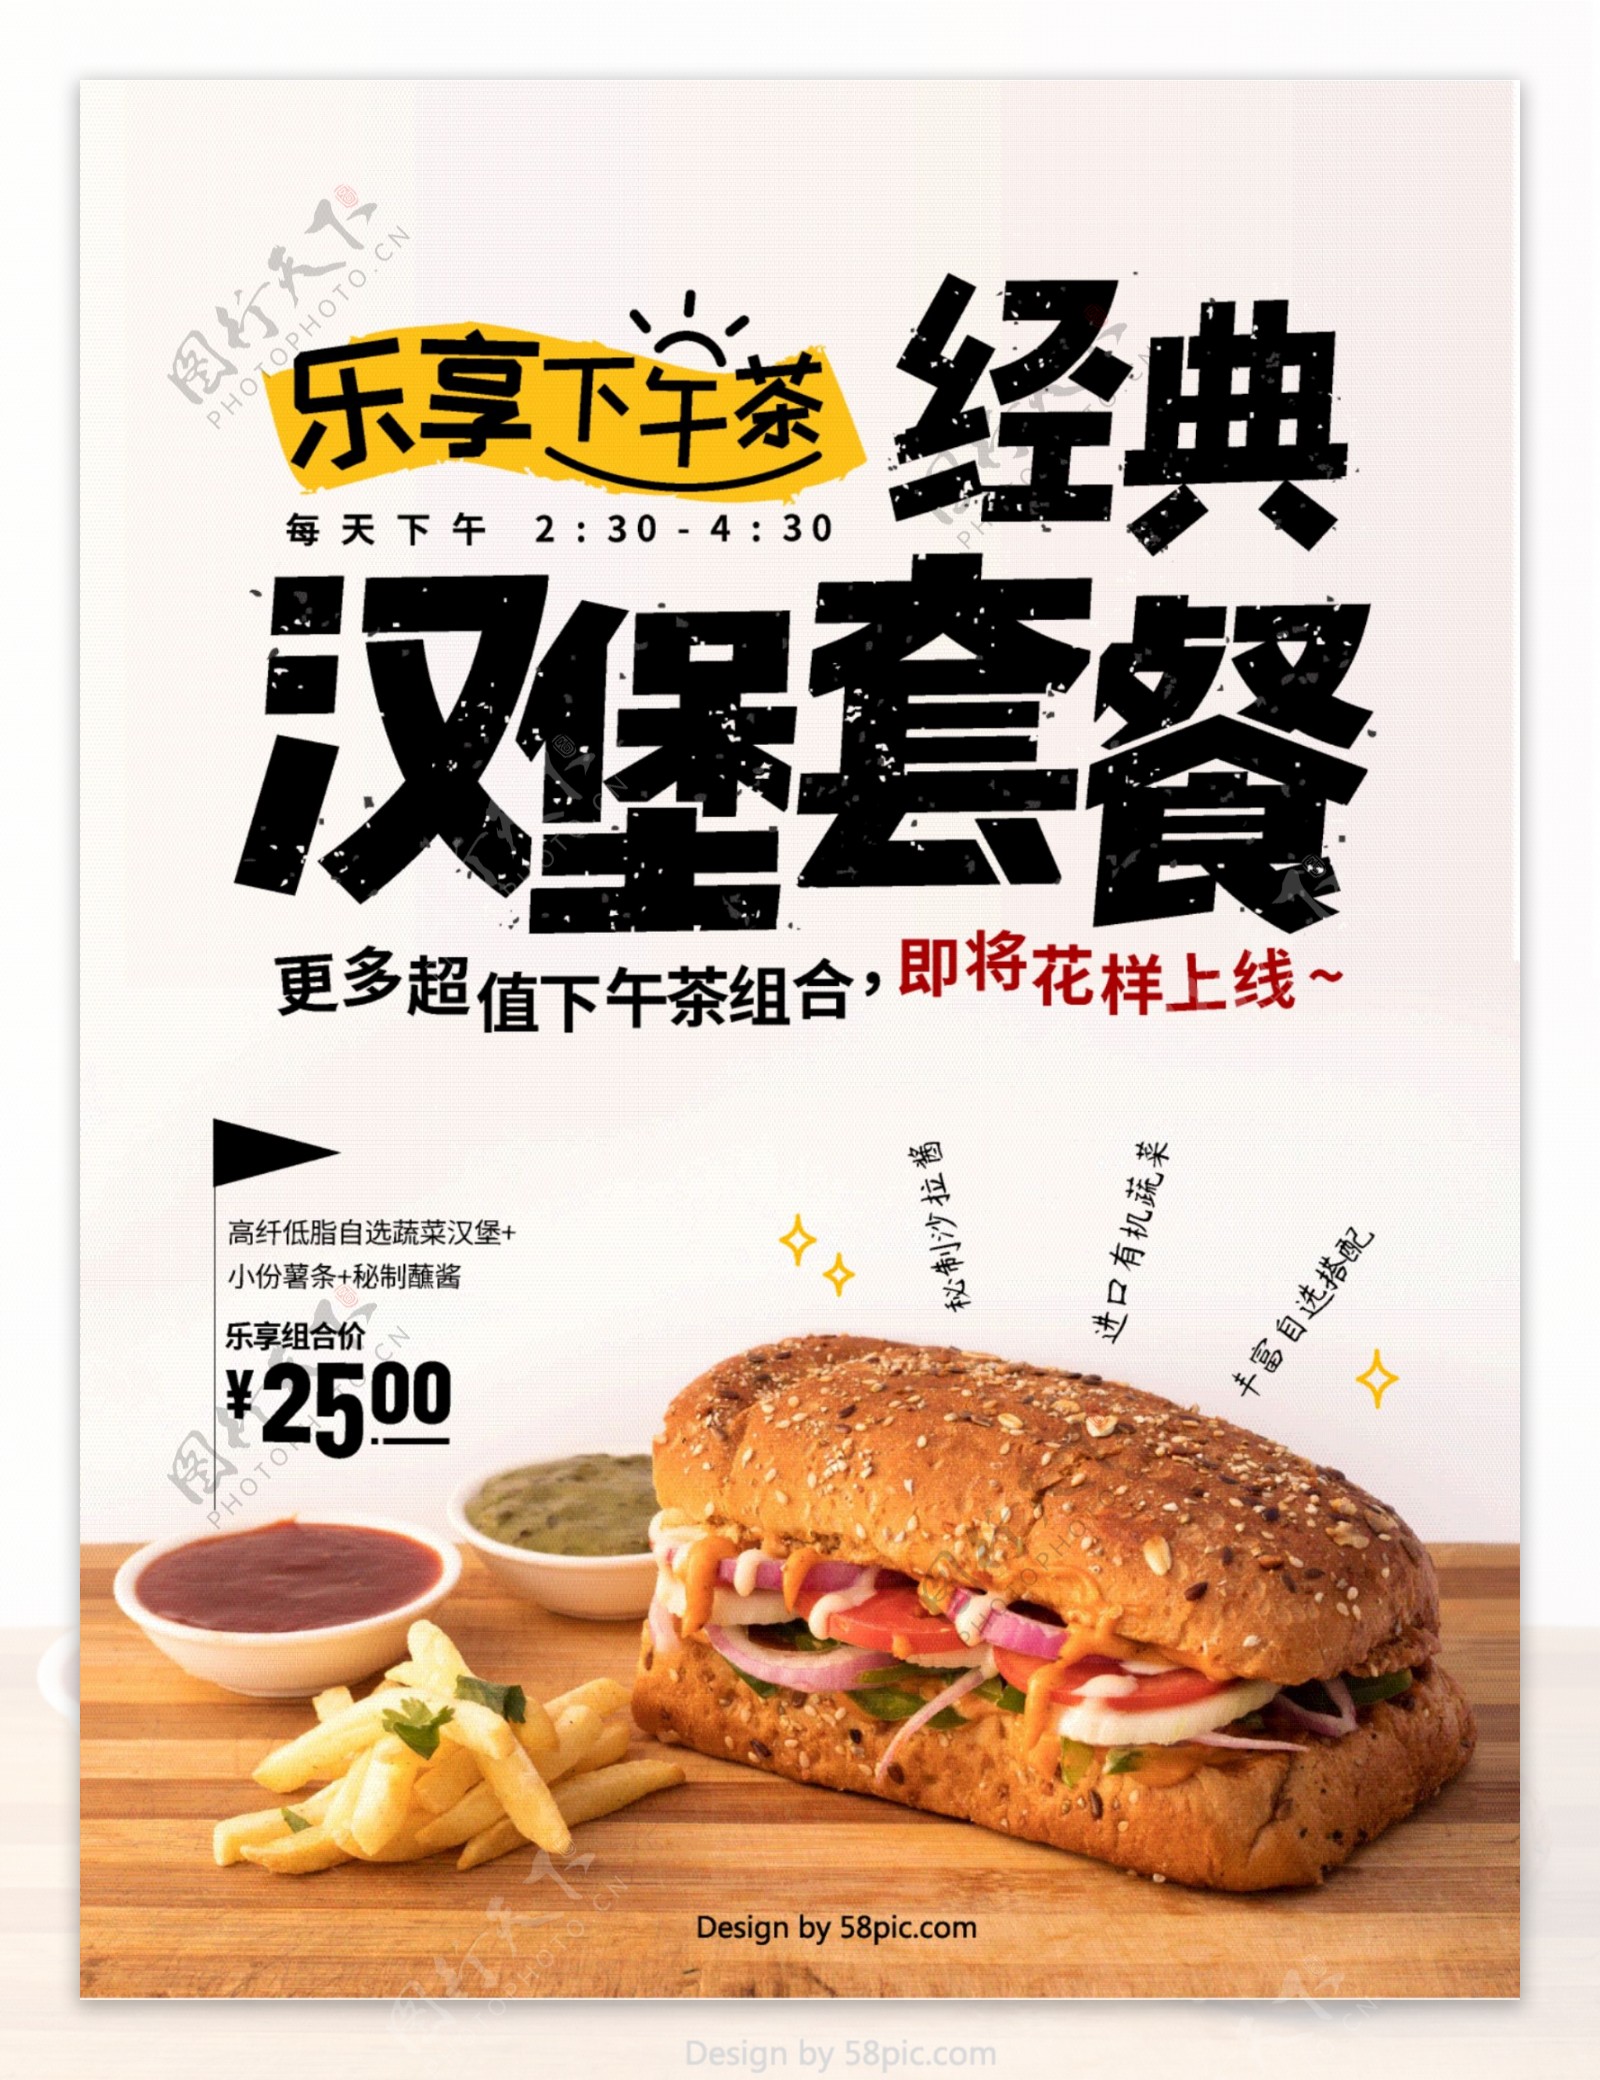 经典汉堡套餐下午茶优惠促销海报